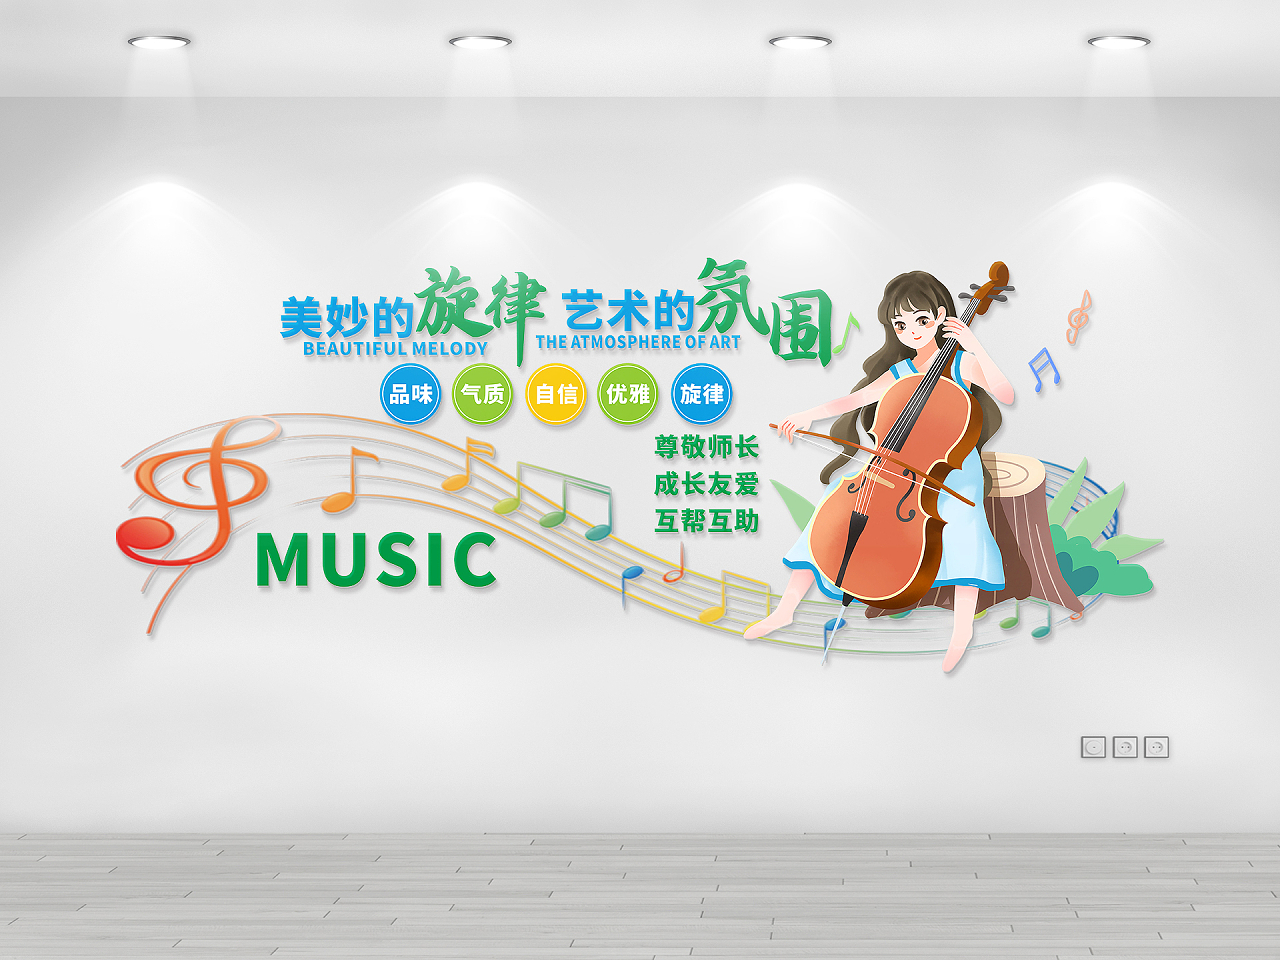 彩色靓丽优美大提琴音乐文化墙美妙的旋律艺术的氛围